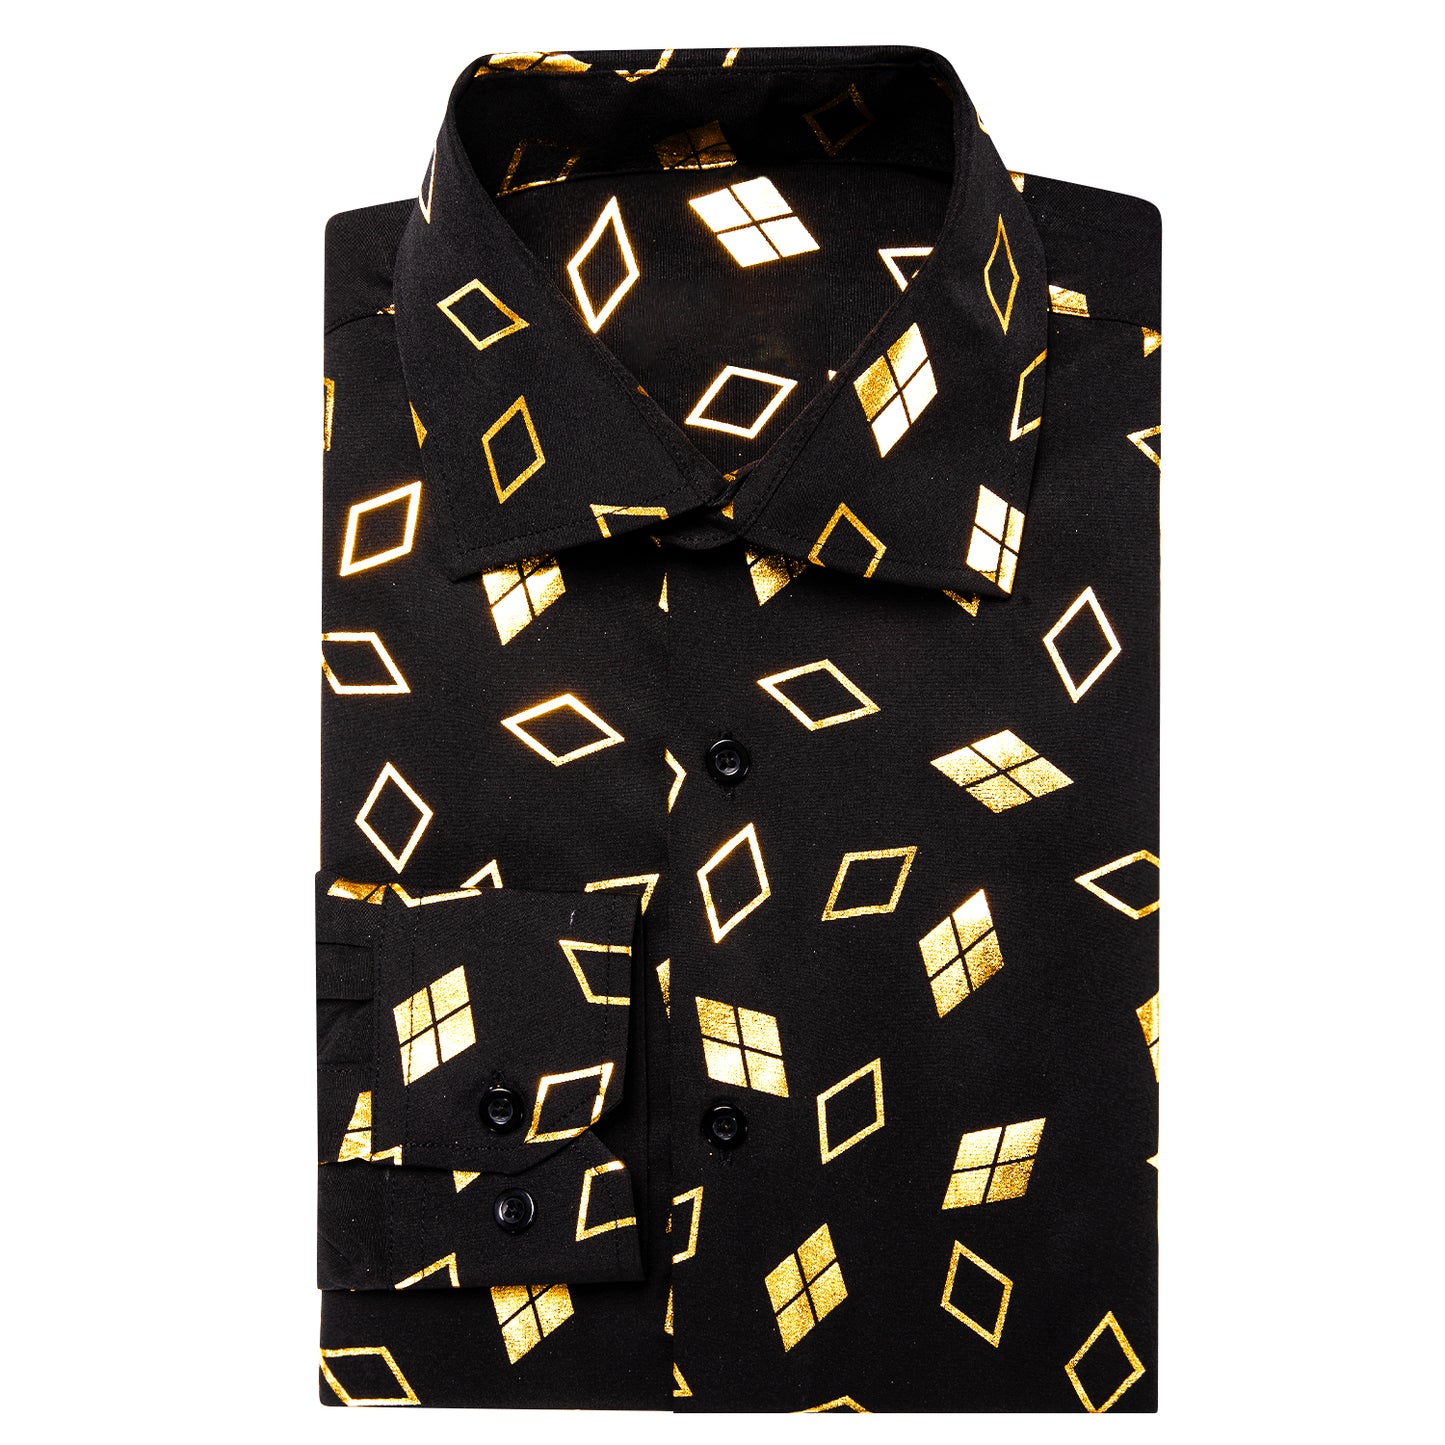 Novelty Printed Shirt - Golden Clubs